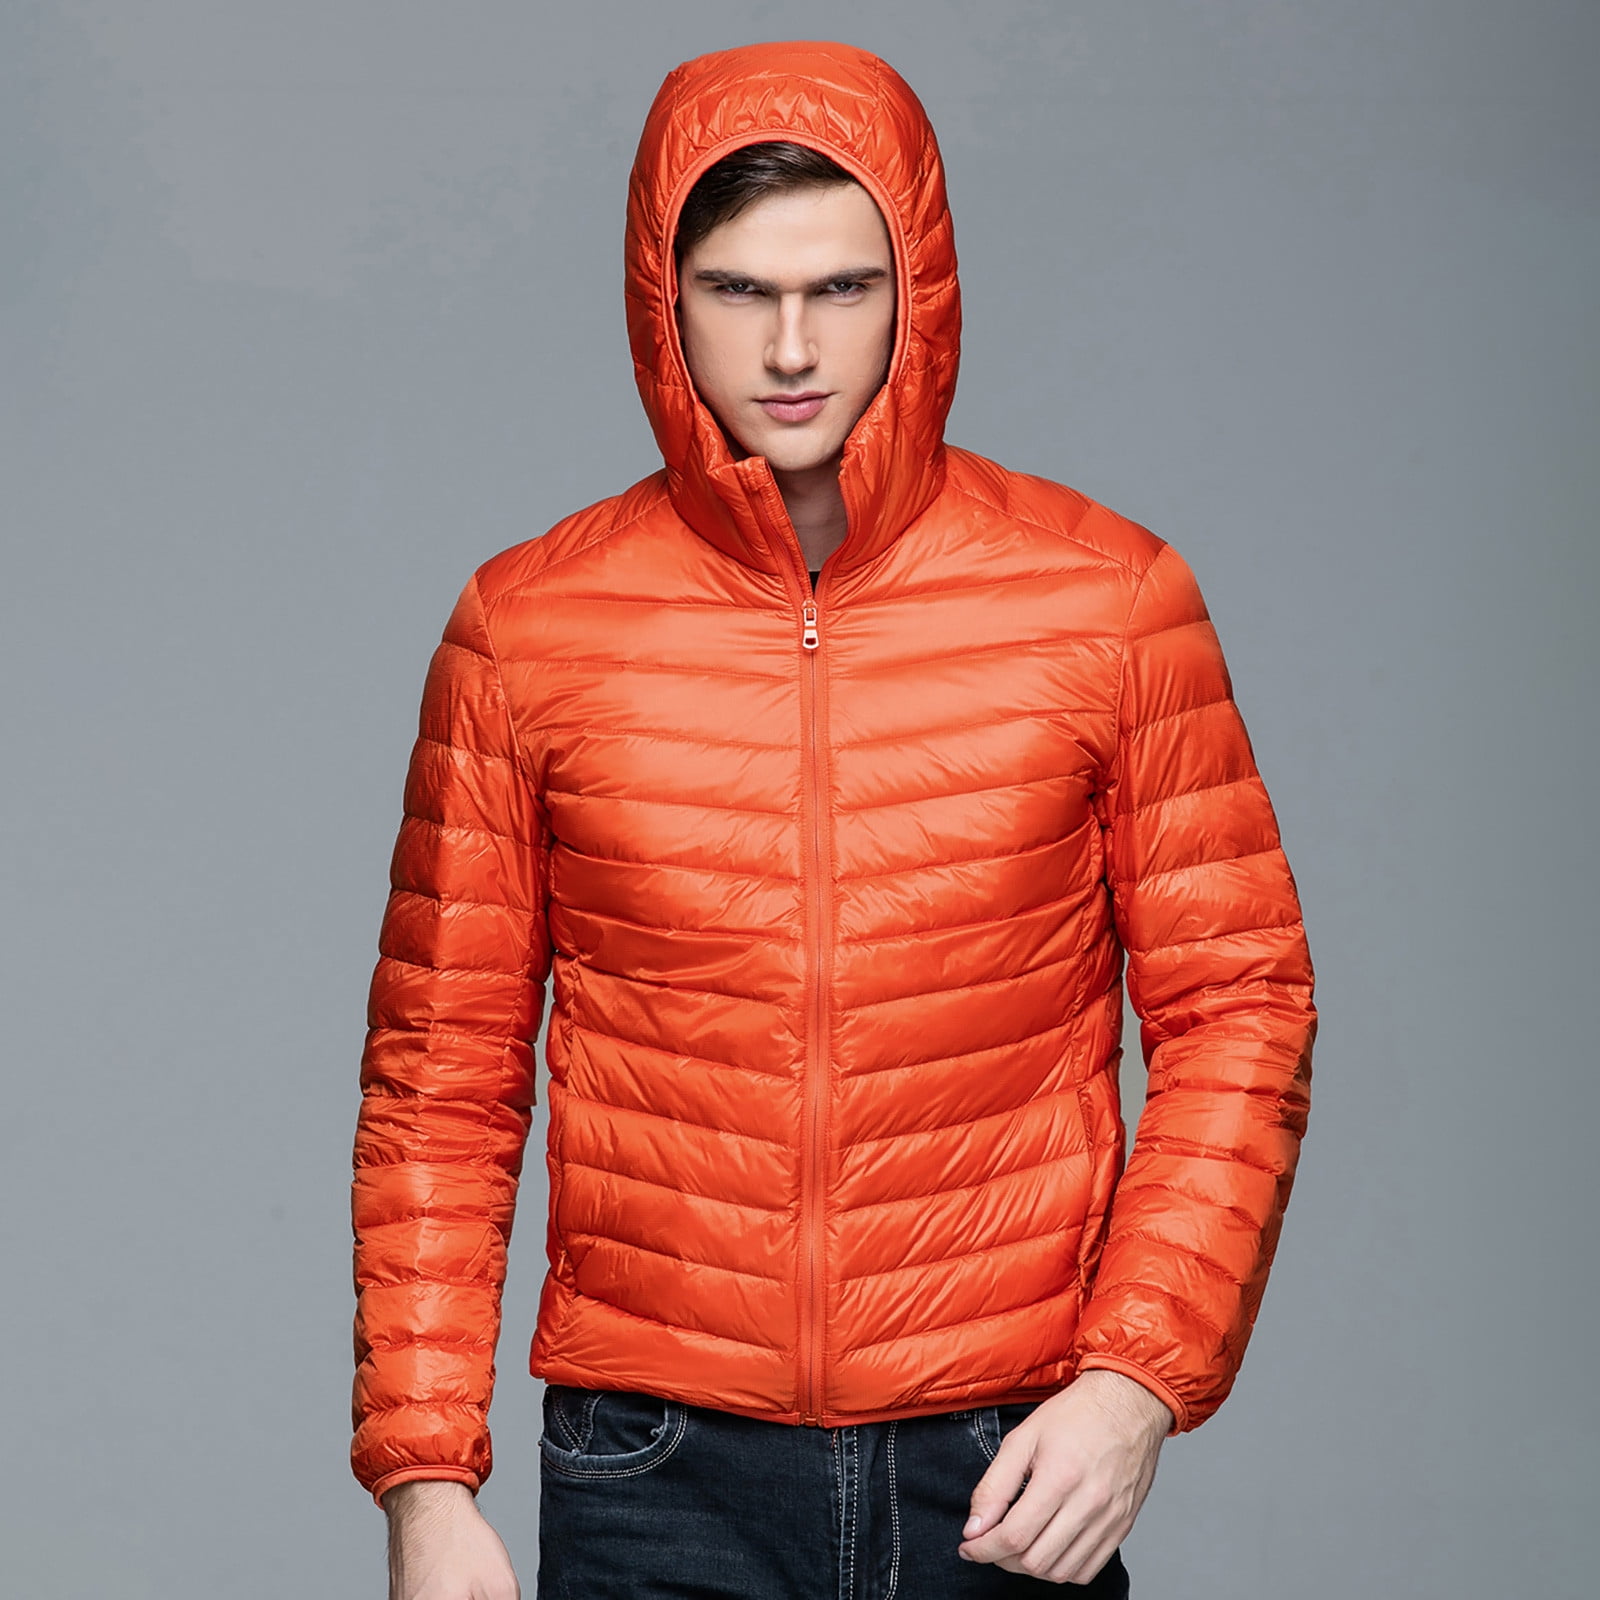 Munlar Mens Corduroy Jacket- Casual Autumn Winter Zipper Fleece Hoodie ...